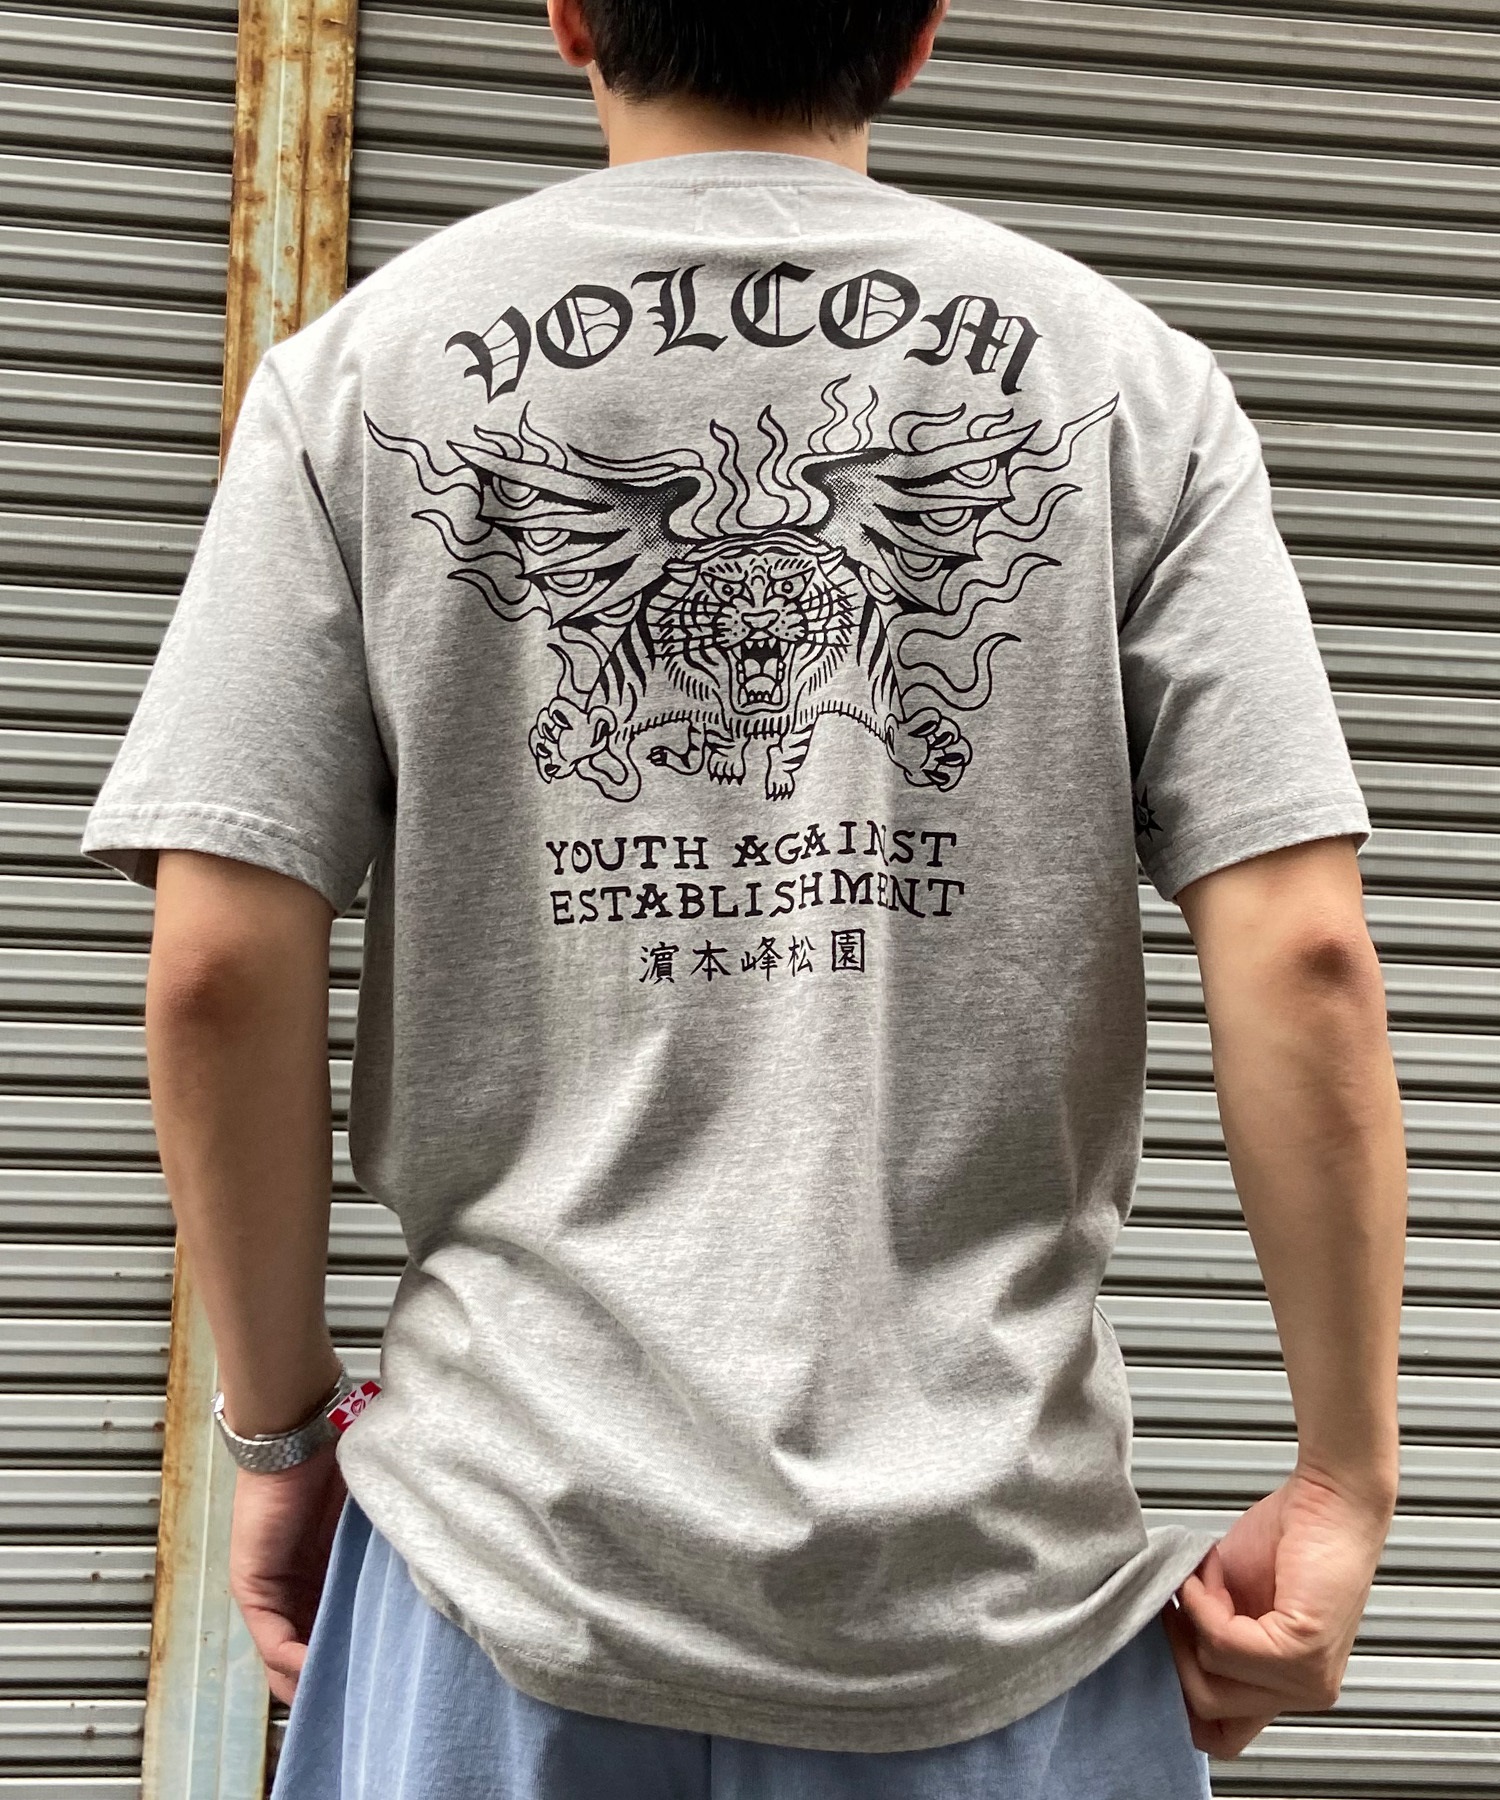 VOLCOM ボルコム メンズ 半袖 Tシャツ バックプリント ヘビーウェイト タイガー 虎 モチーフ AF312400(BLK-M)